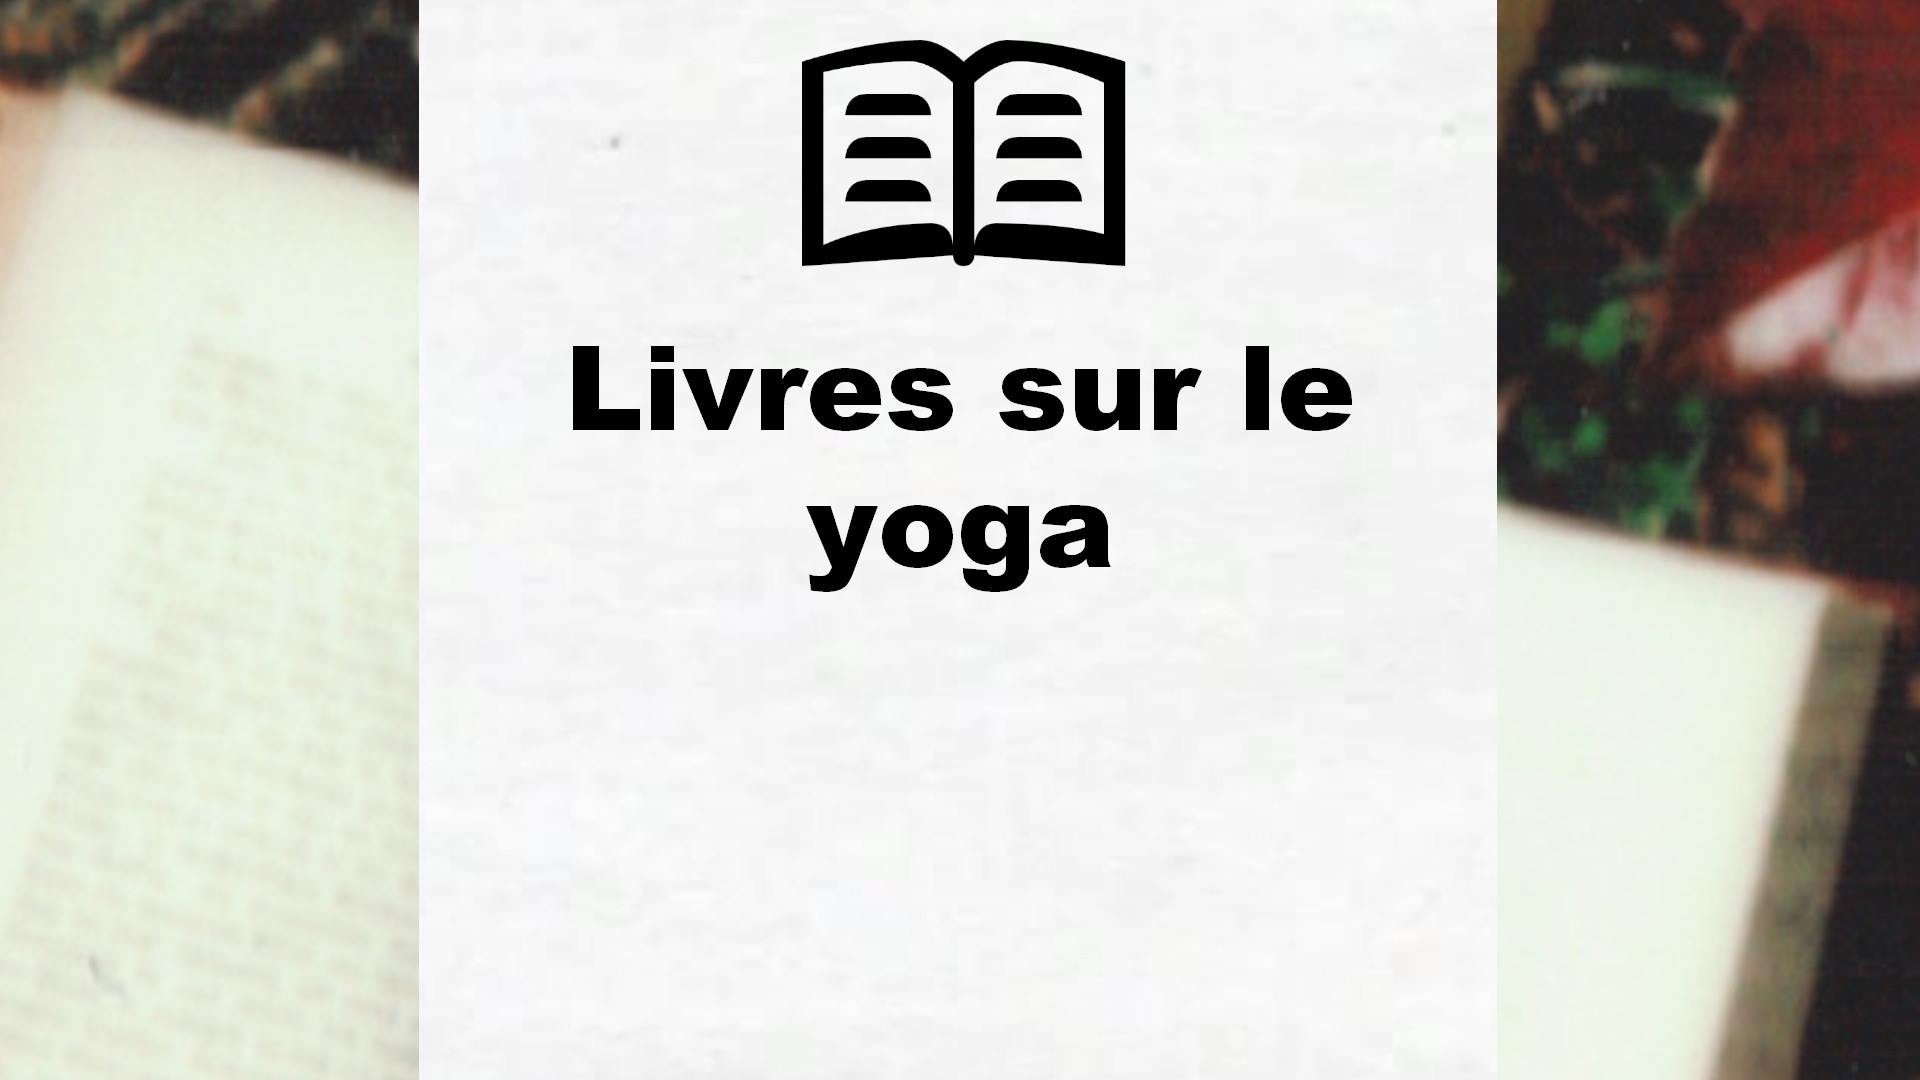 Livres sur le yoga